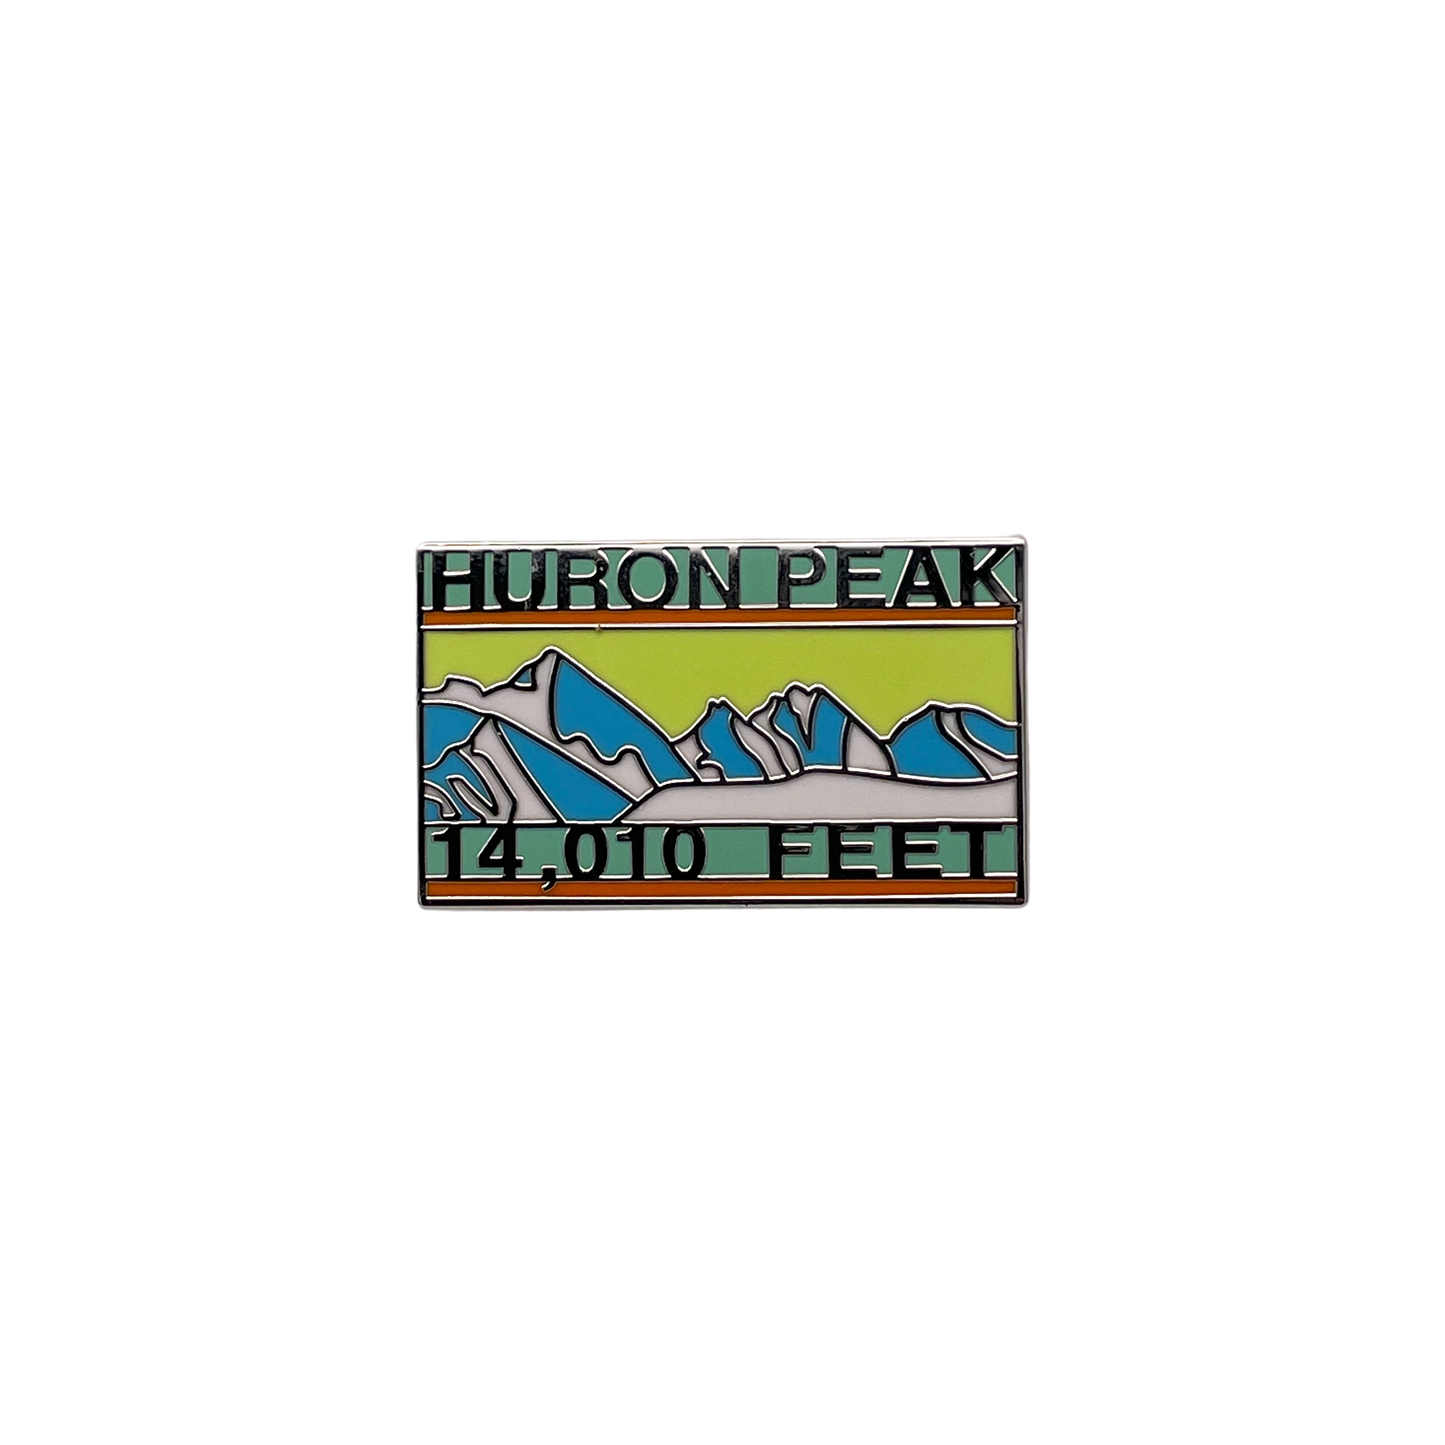 Huron Peak Pin